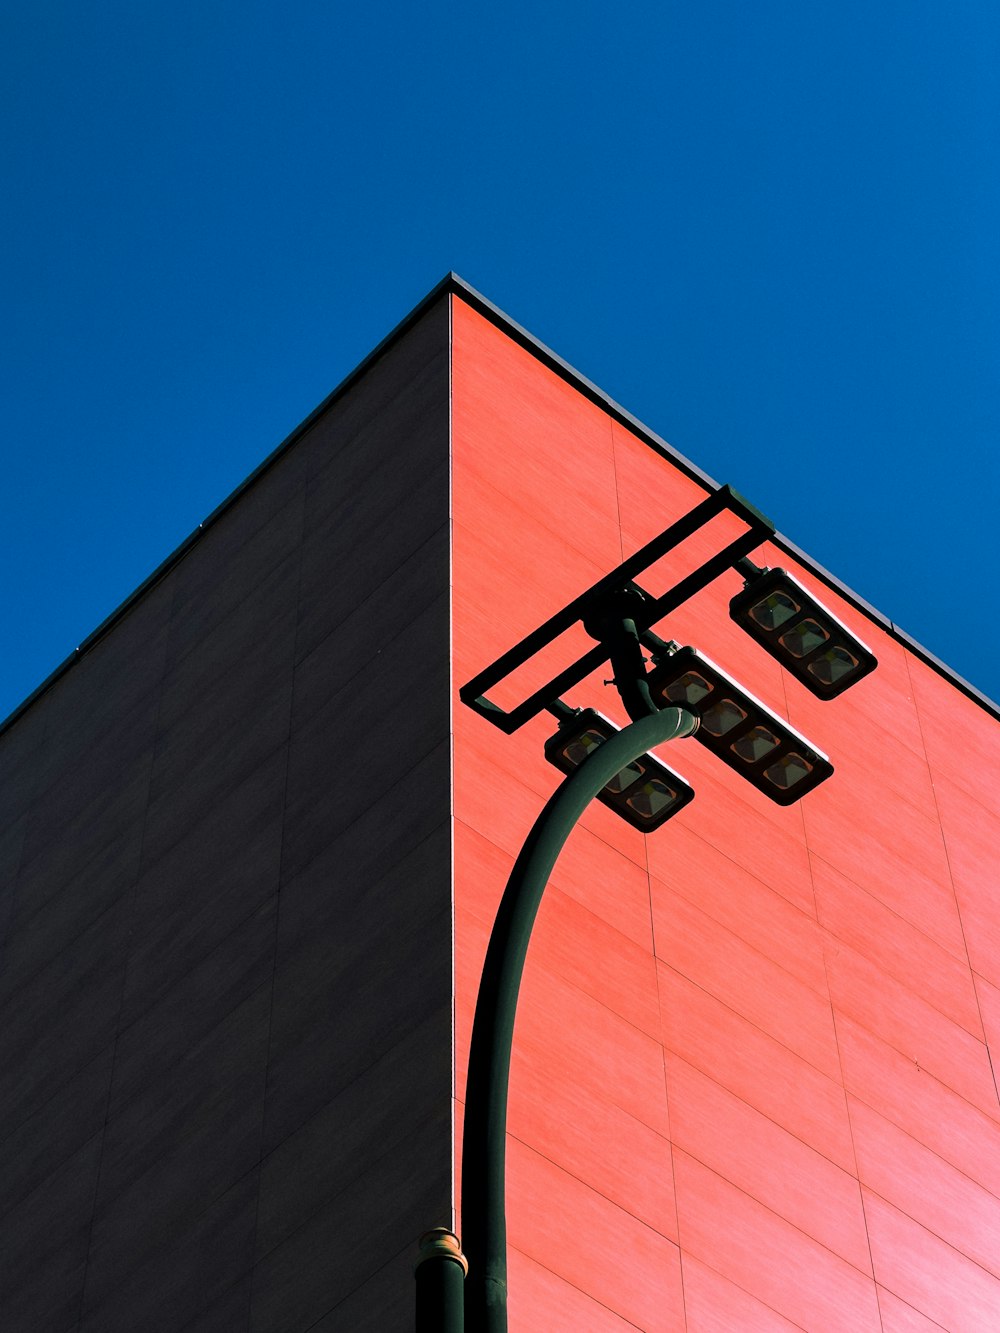 a street light next to a tall building